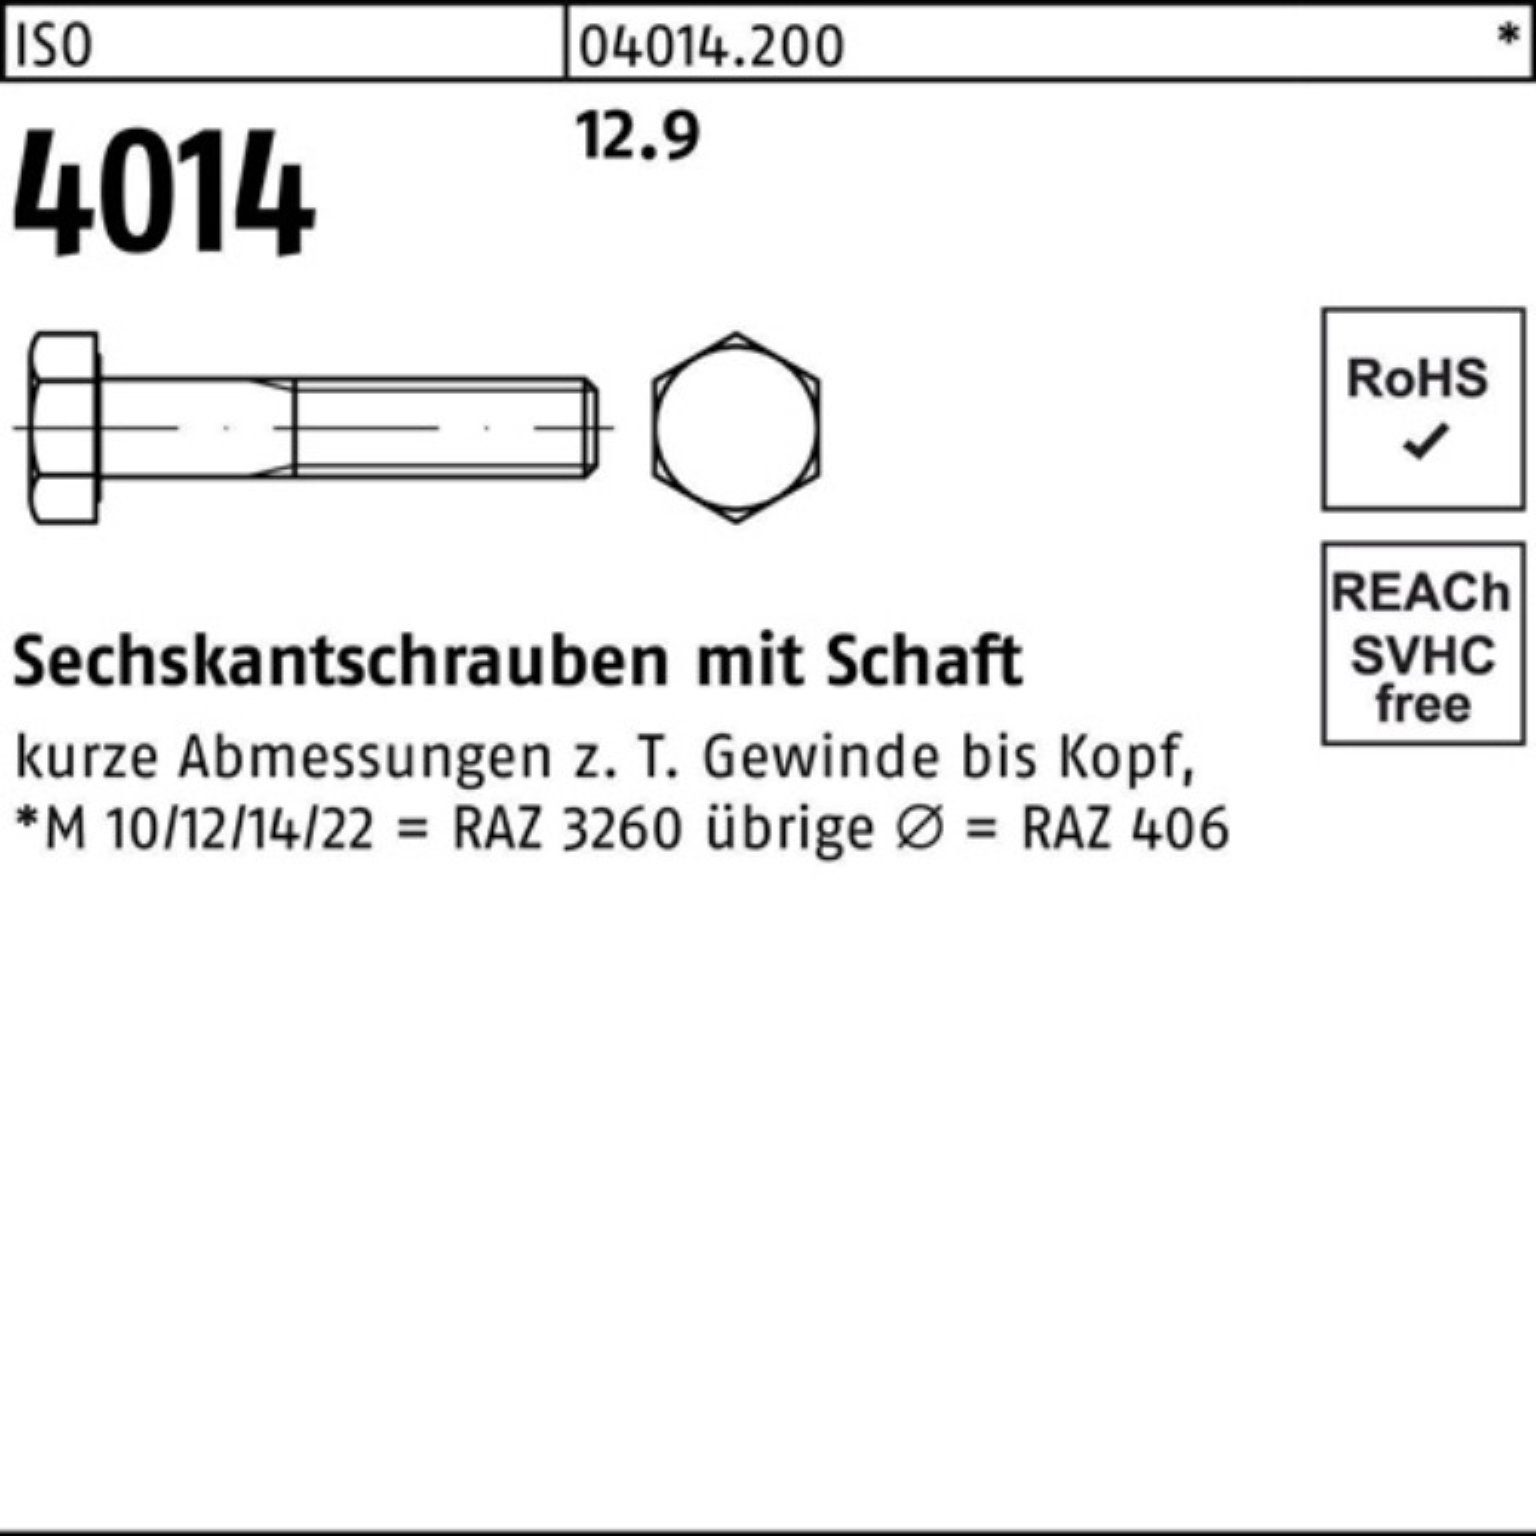 Sechskantschraube Stück 100er 100 Sechskantschraube Schaft ISO 100 Bufab Pack M10x 12.9 4014